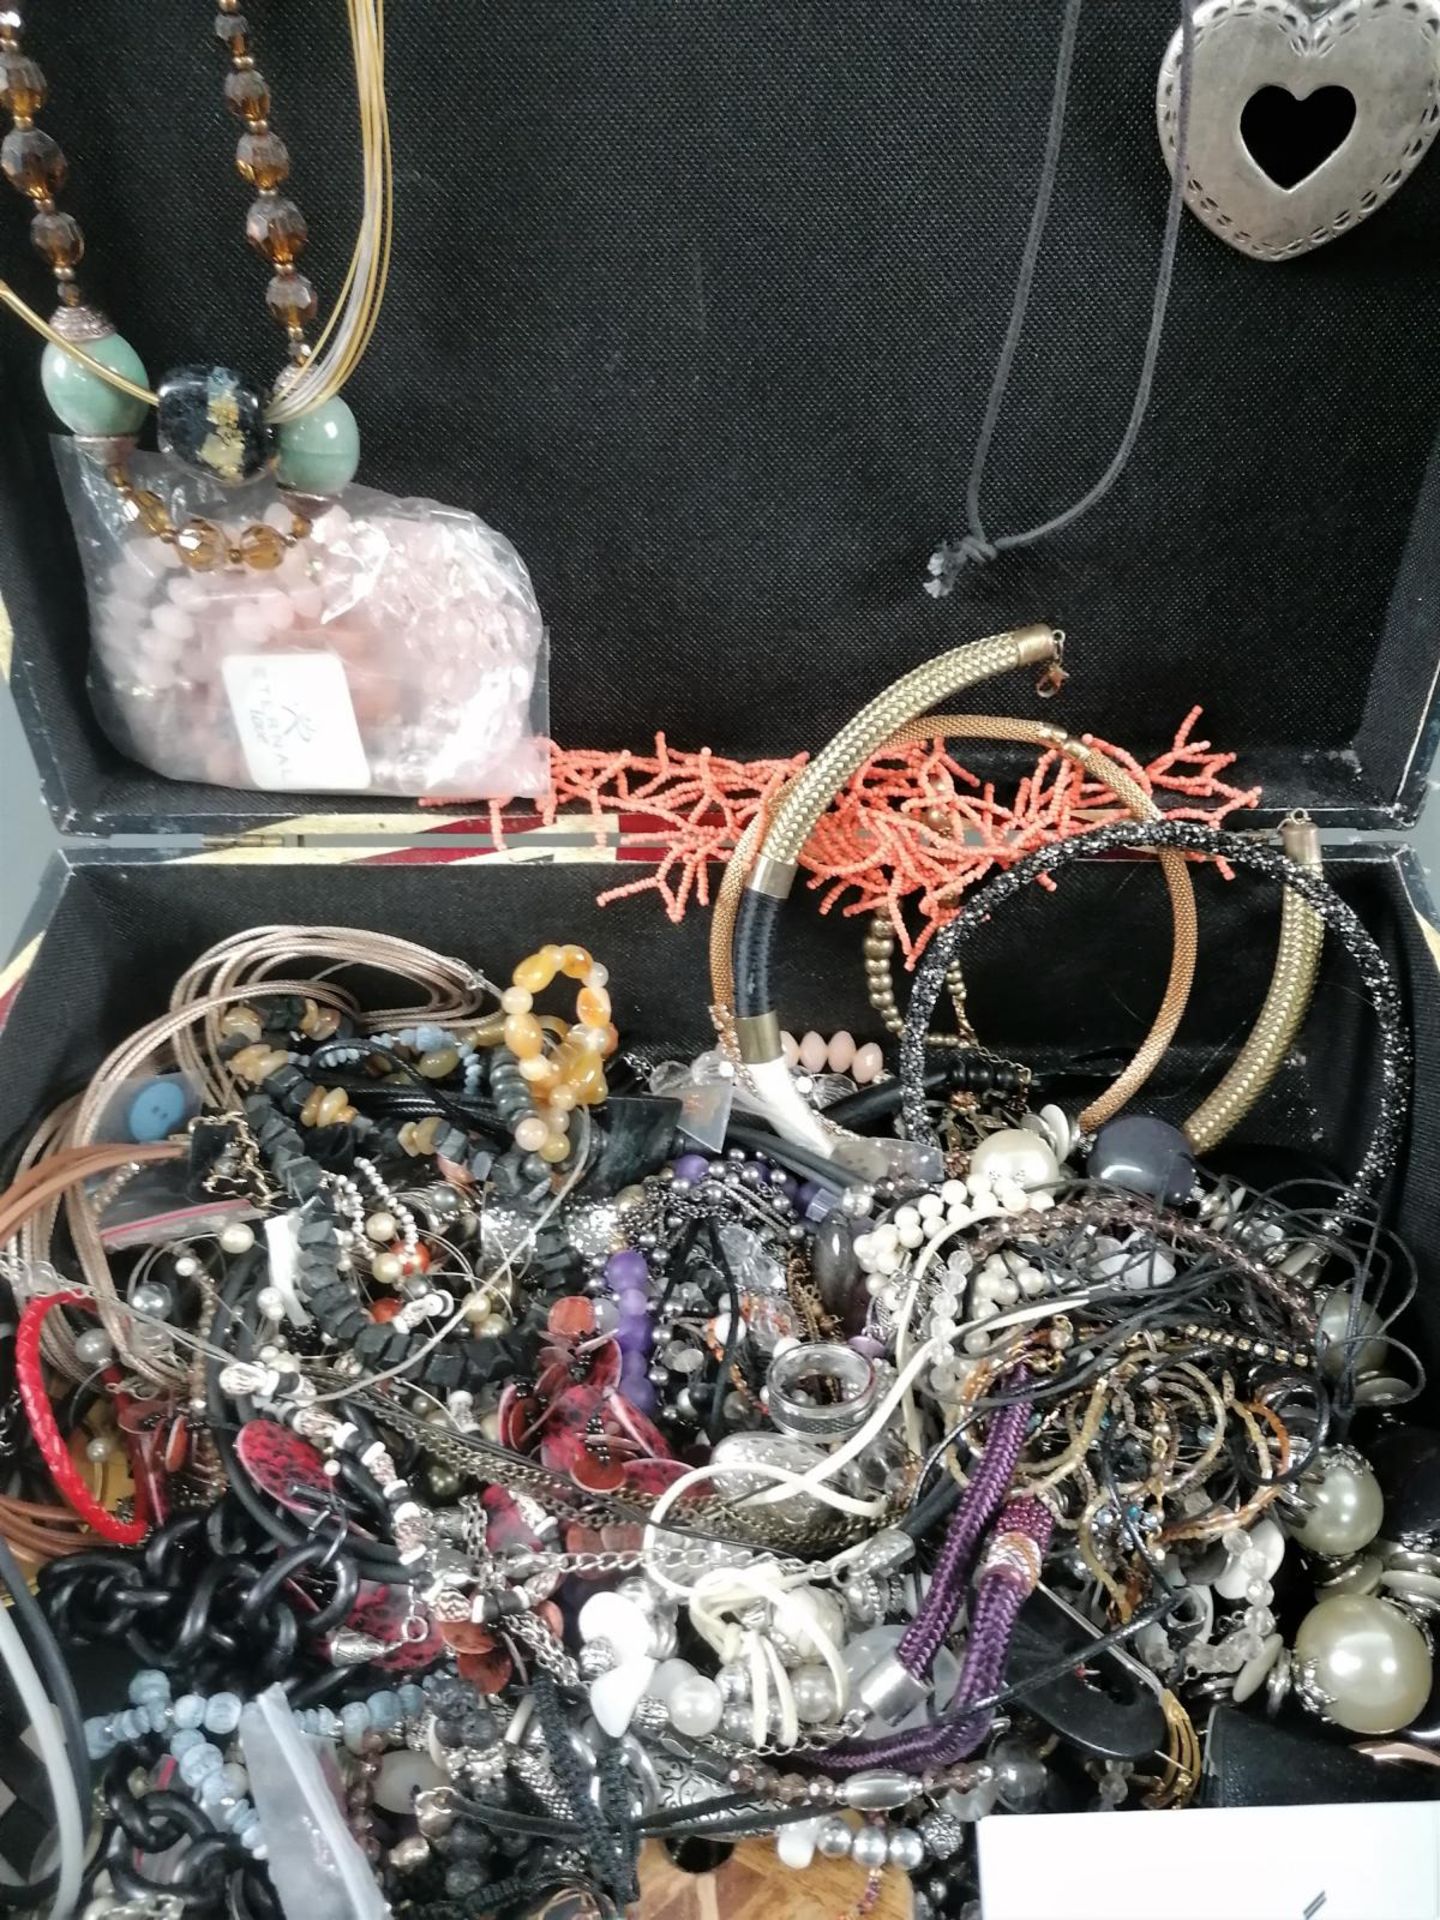 Großes Konvolut Schmuck, Armbanduhren und Modeschmuck im Koffer - Bild 5 aus 11